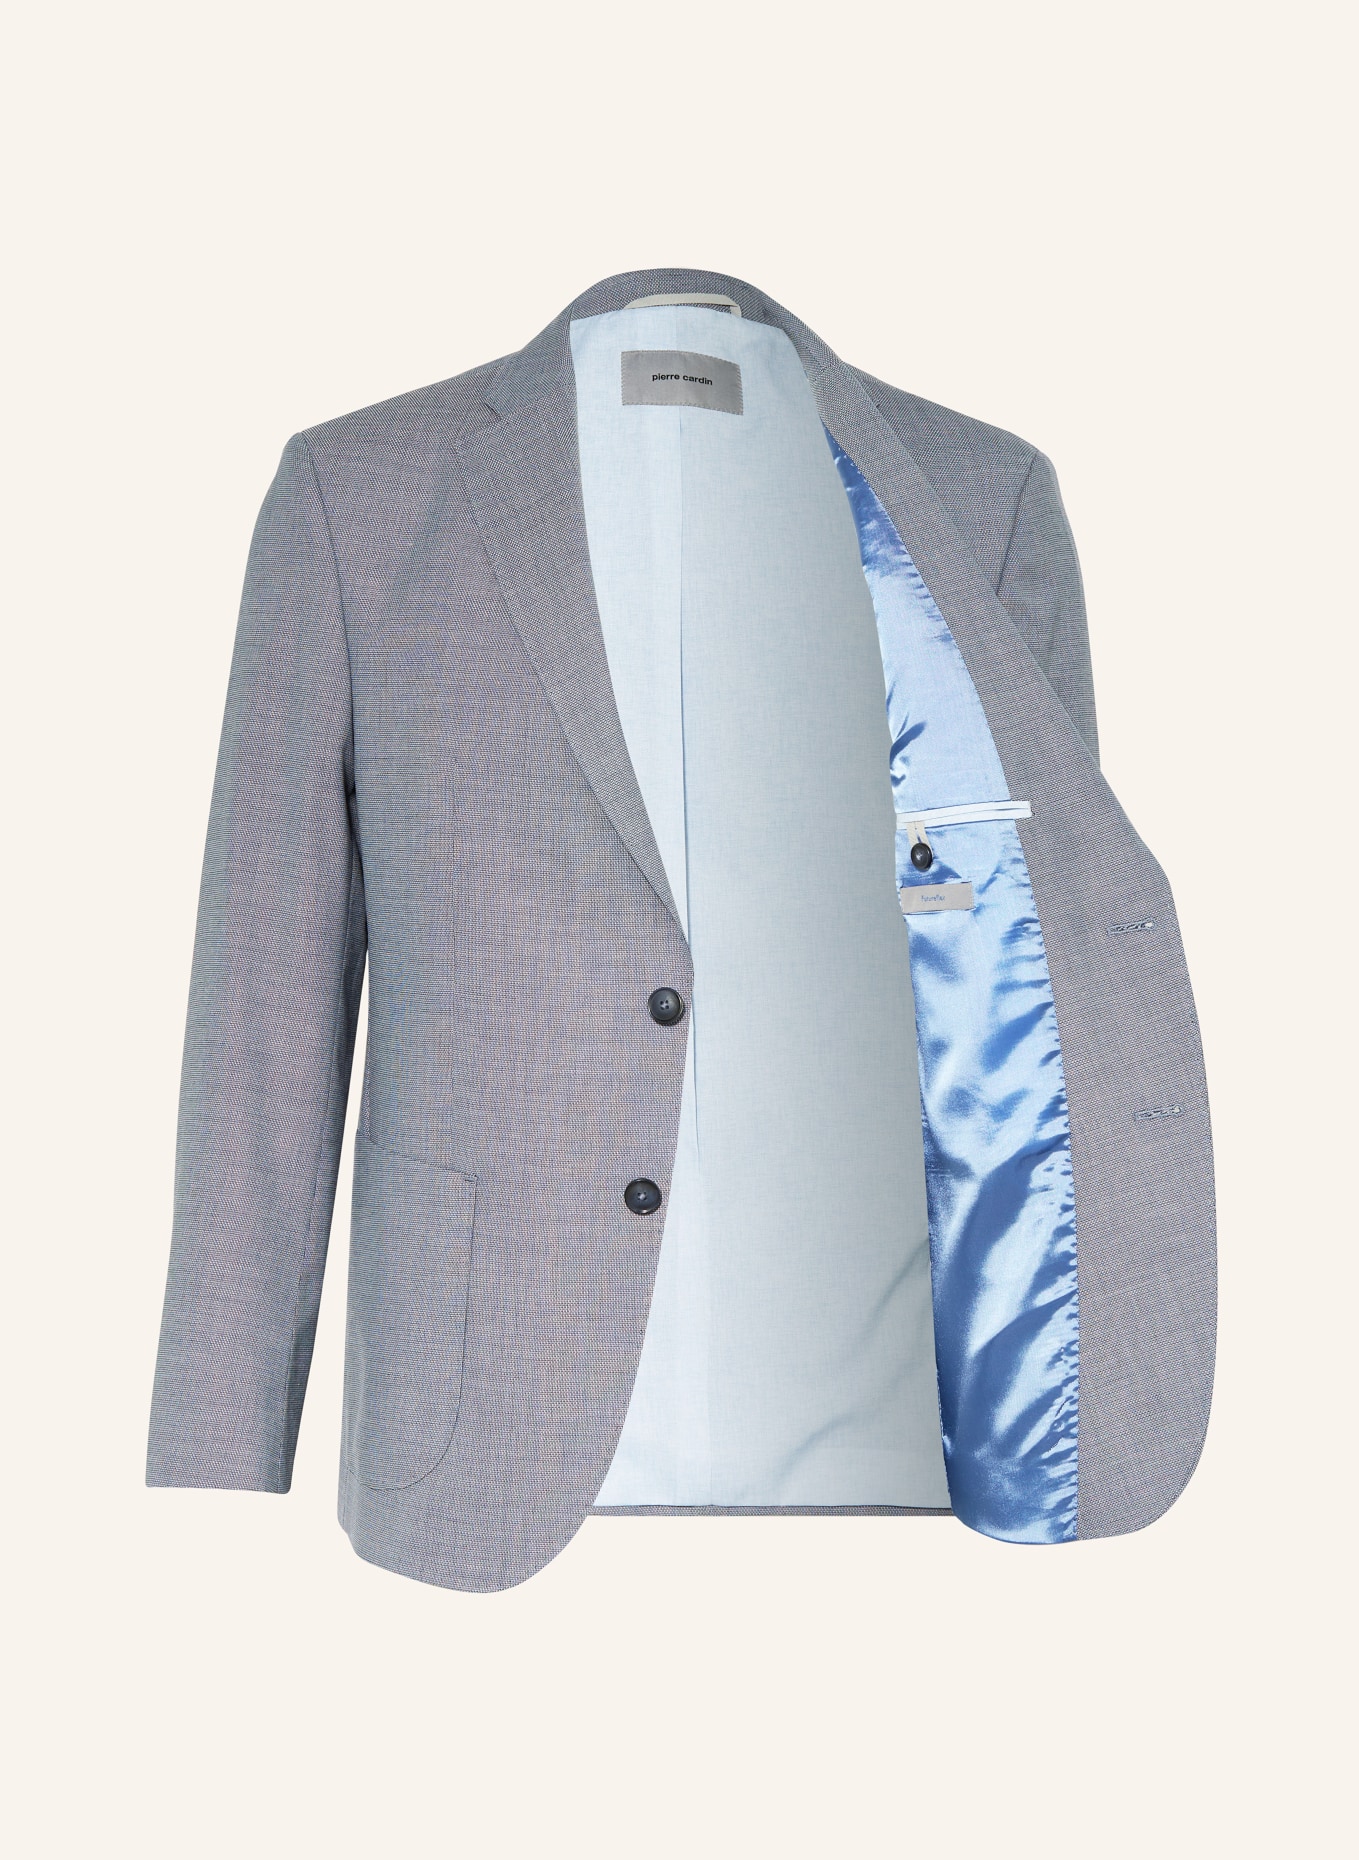 pierre cardin Suit jacket MICHEL regular fit, Color: 6227 Copen Blue (Image 4)